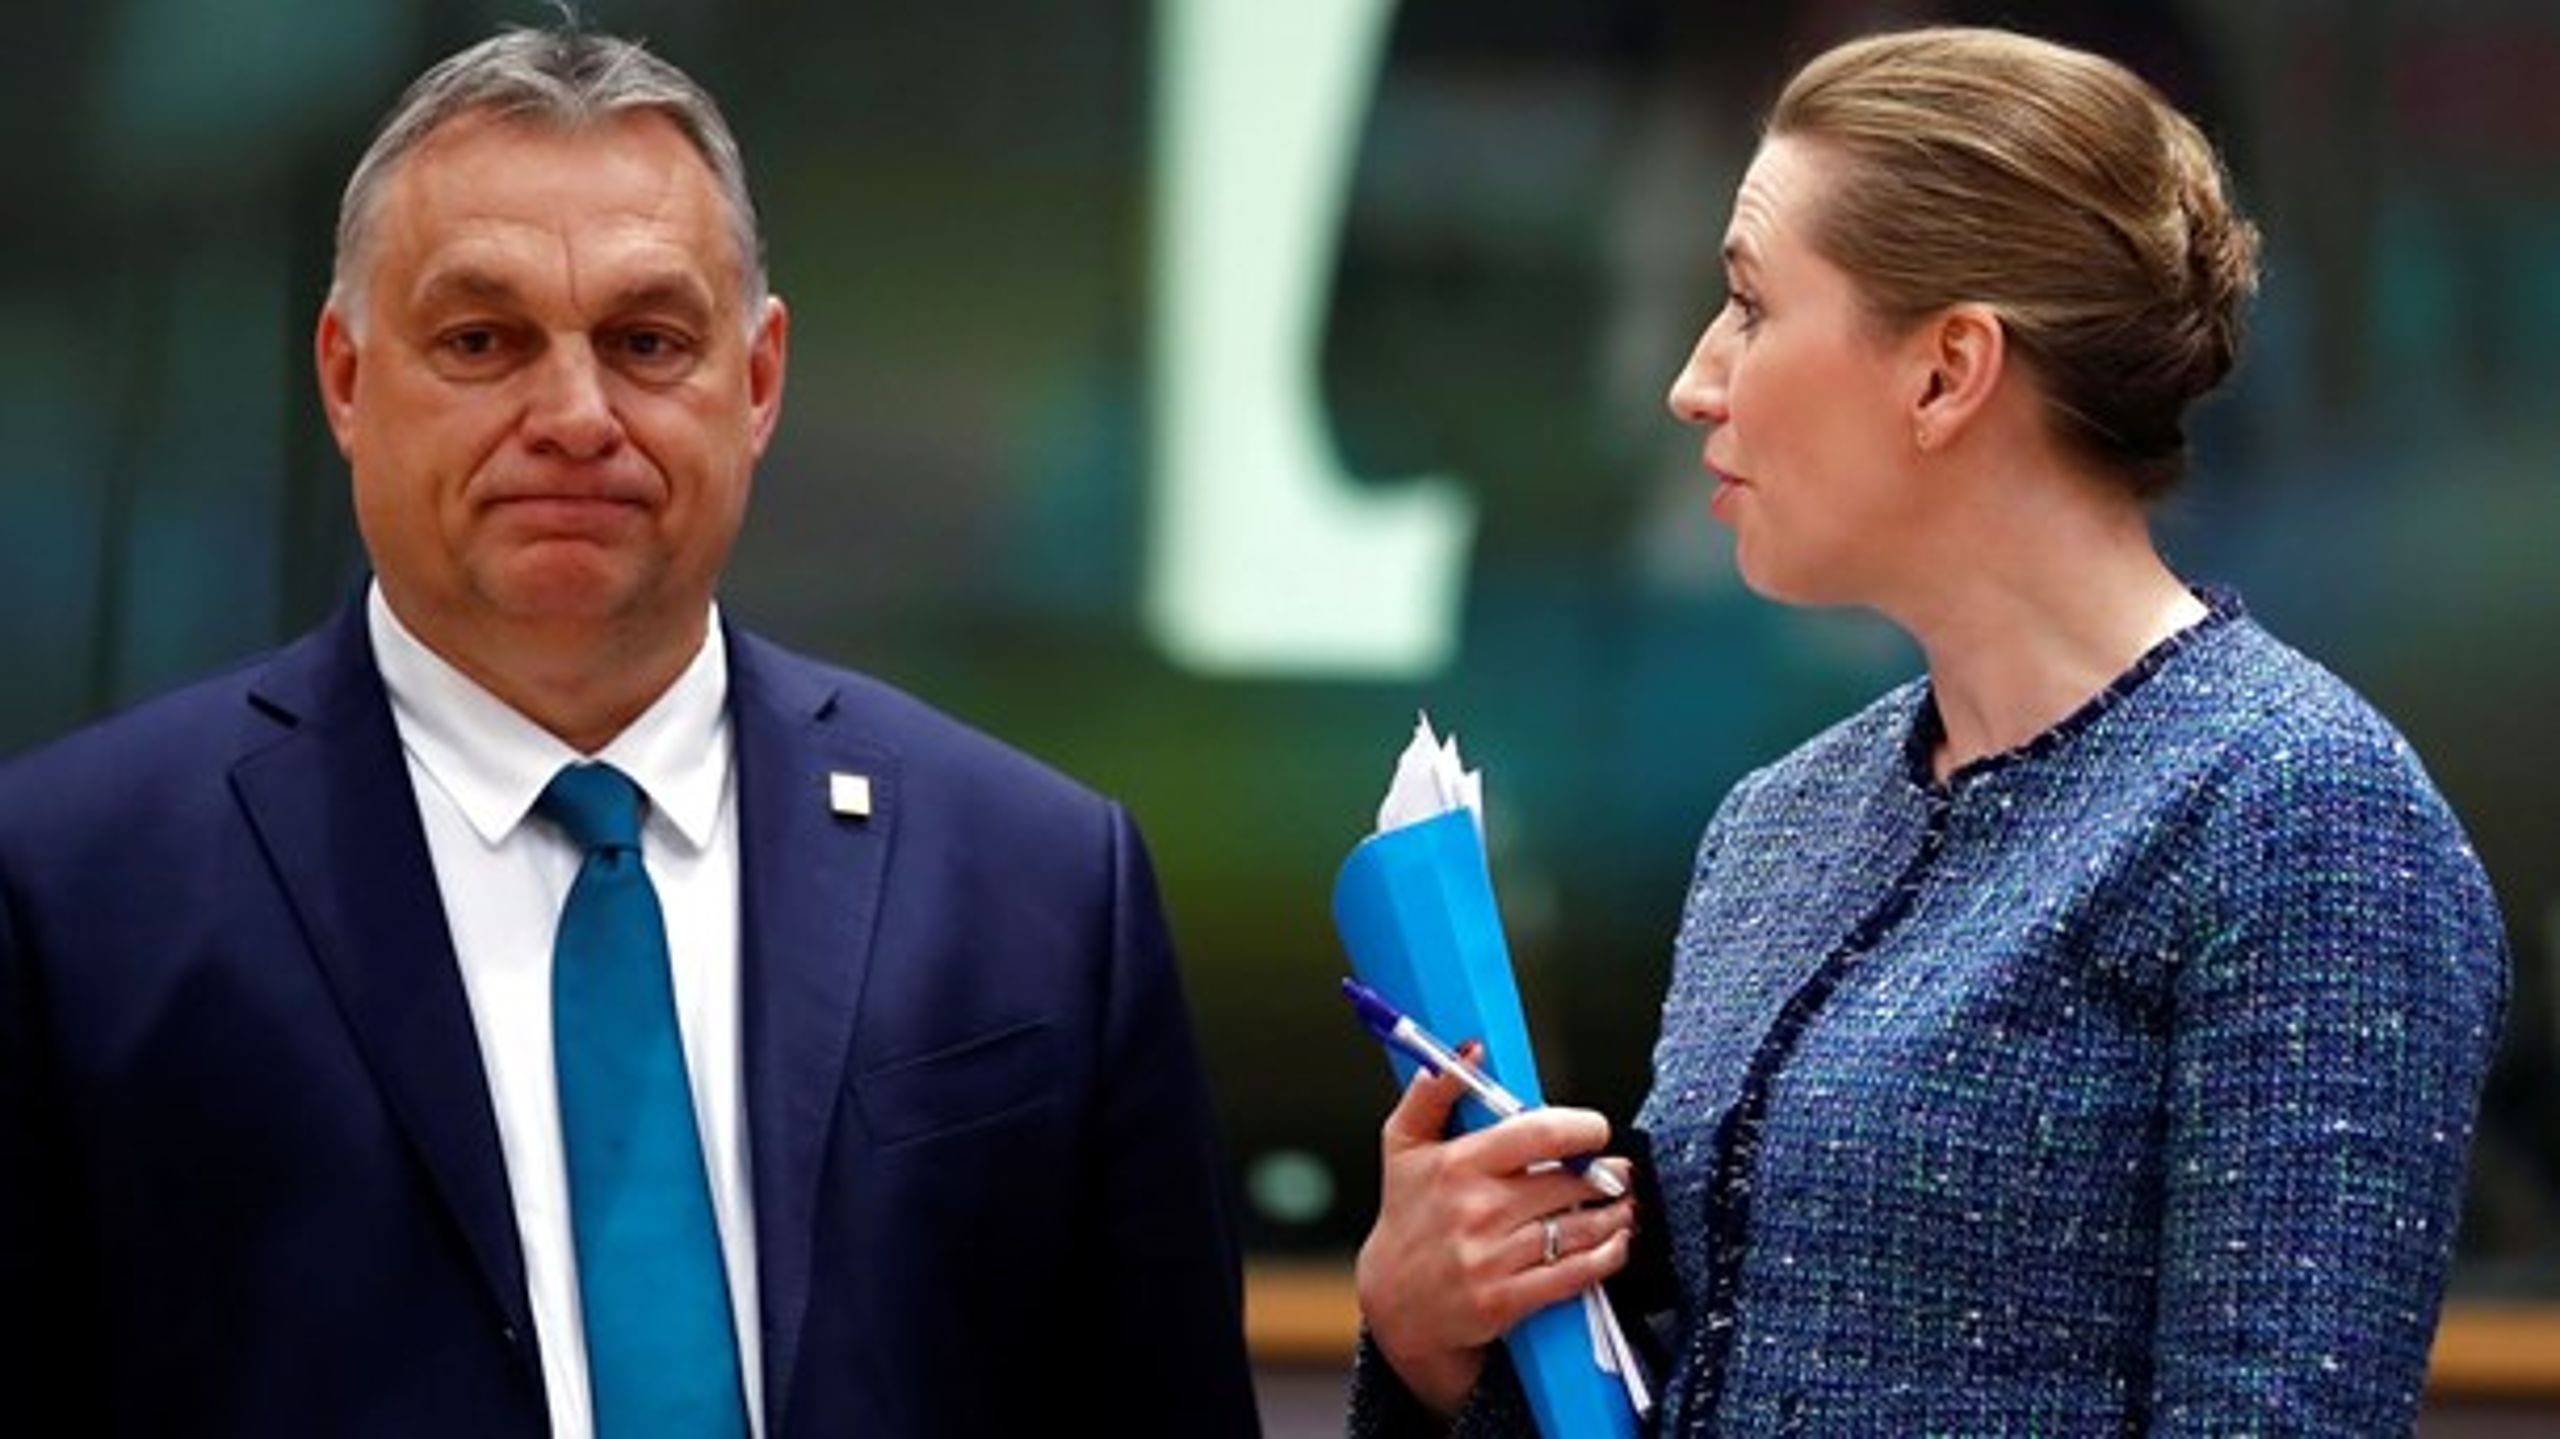 Tiden byder på omfattende frihedsindskrænkninger
og undtagelsespolitik rundtom på det europæiske kontinent. Også i Danmark.&nbsp;Men værst ser det ud i Viktor Orbáns Ungarn, skriver Adam Holm.